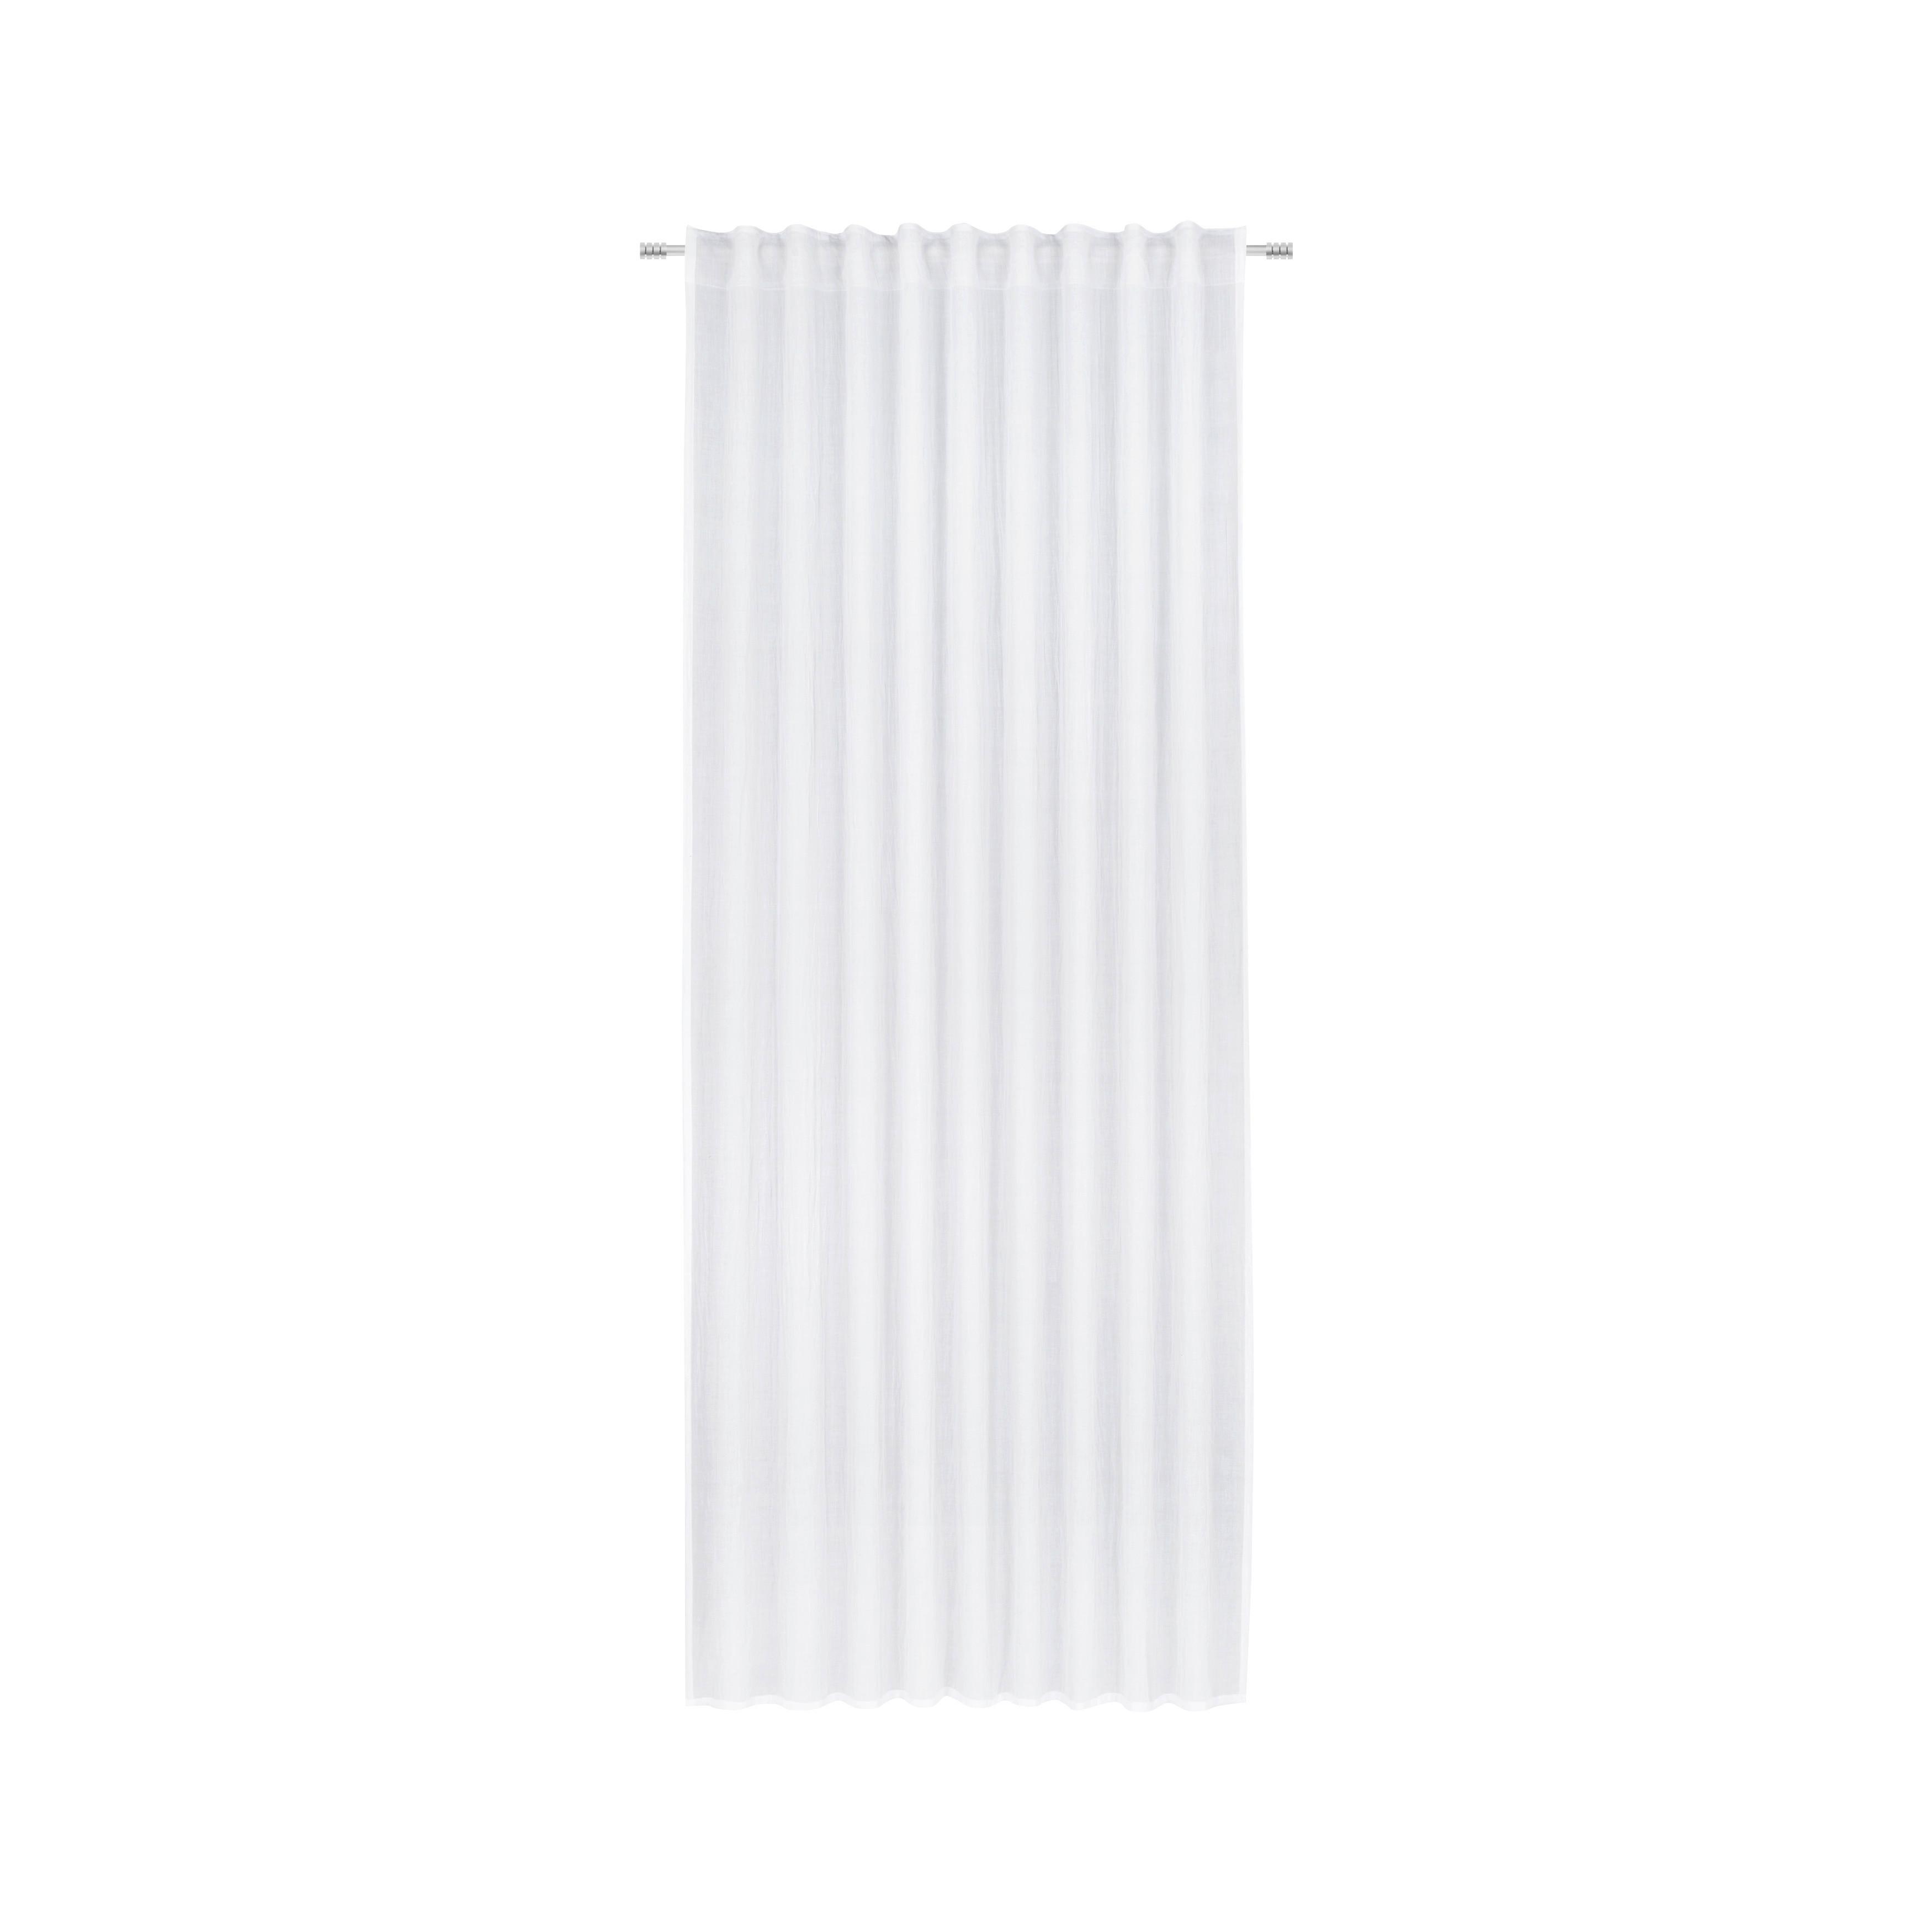 Perdea confecționată Ramona - alb, Modern, textil (135/245cm) - Modern Living